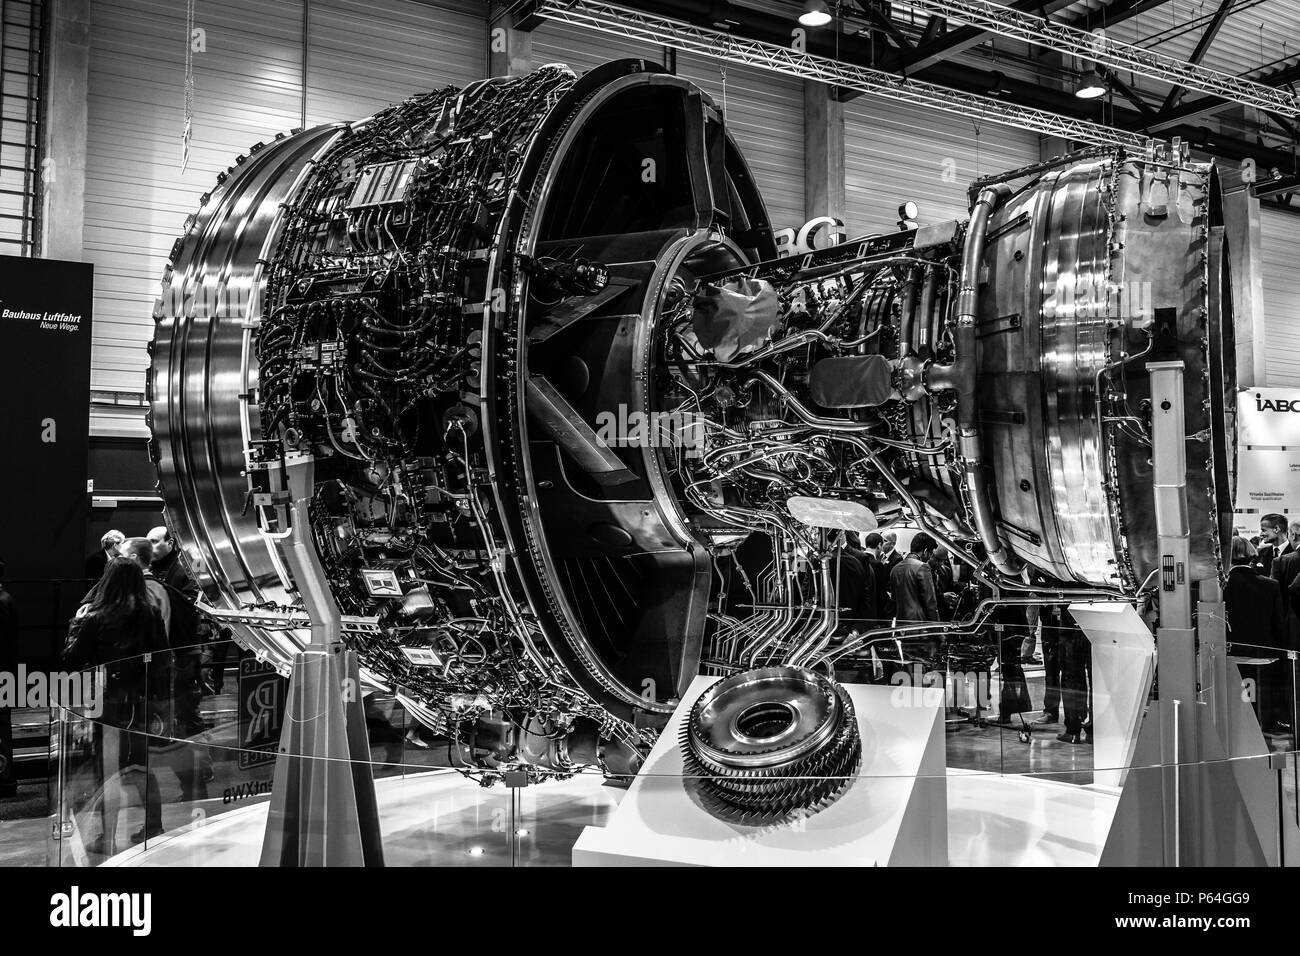 BERLIN, DEUTSCHLAND - 25 April 2018: Turbofan Triebwerke von Rolls-Royce-Trent  XWB. Schwarz und Weiß. Ausstellung die ILA Berlin Air Show 2018  Stockfotografie - Alamy